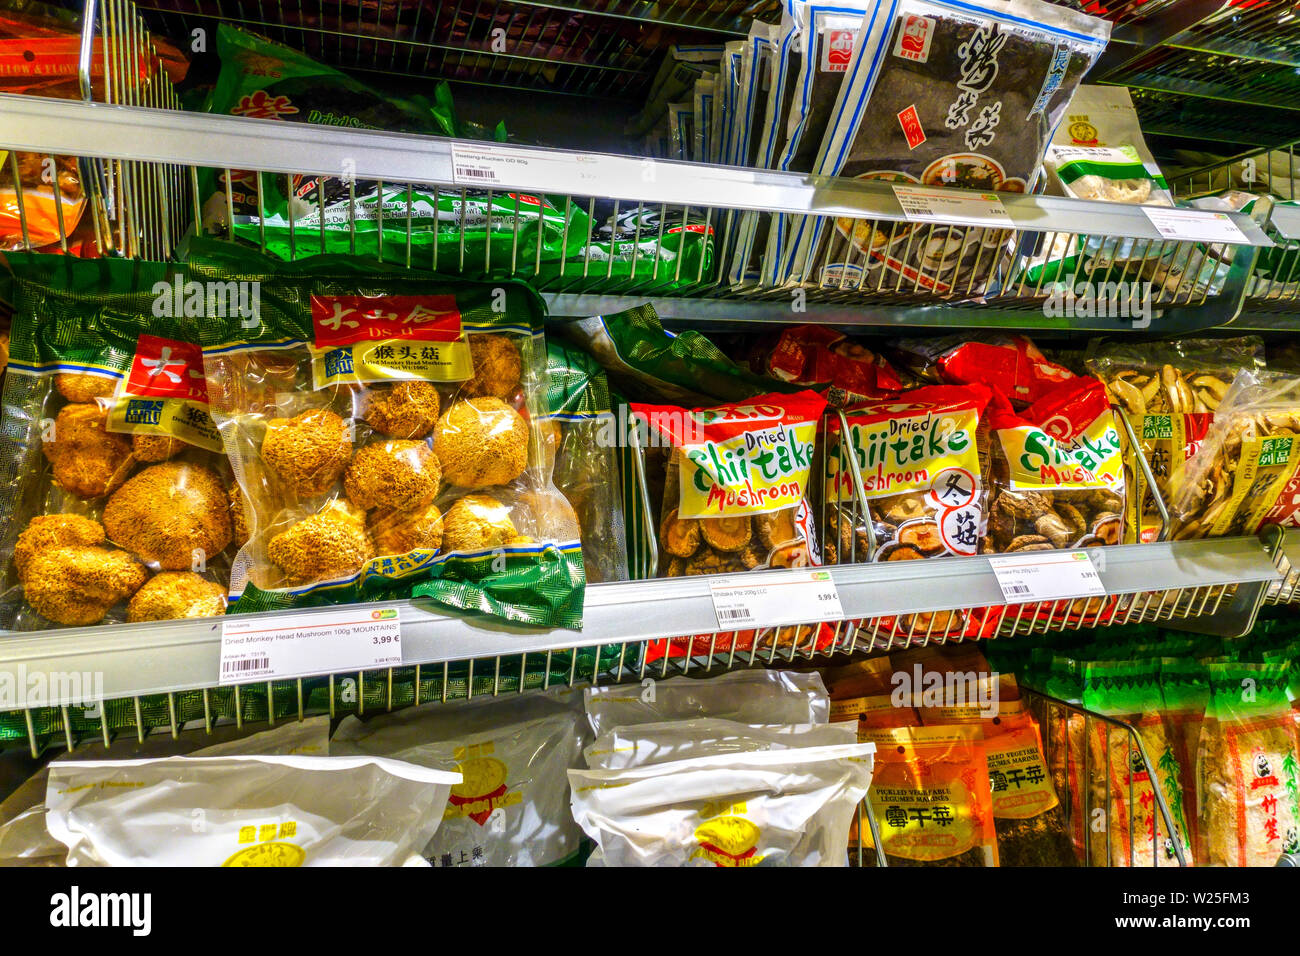 Supermarché asiatique 'Go Asia' étagères de supermarché, champignons séchés, Dresde, Allemagne étagère de supermarché Banque D'Images